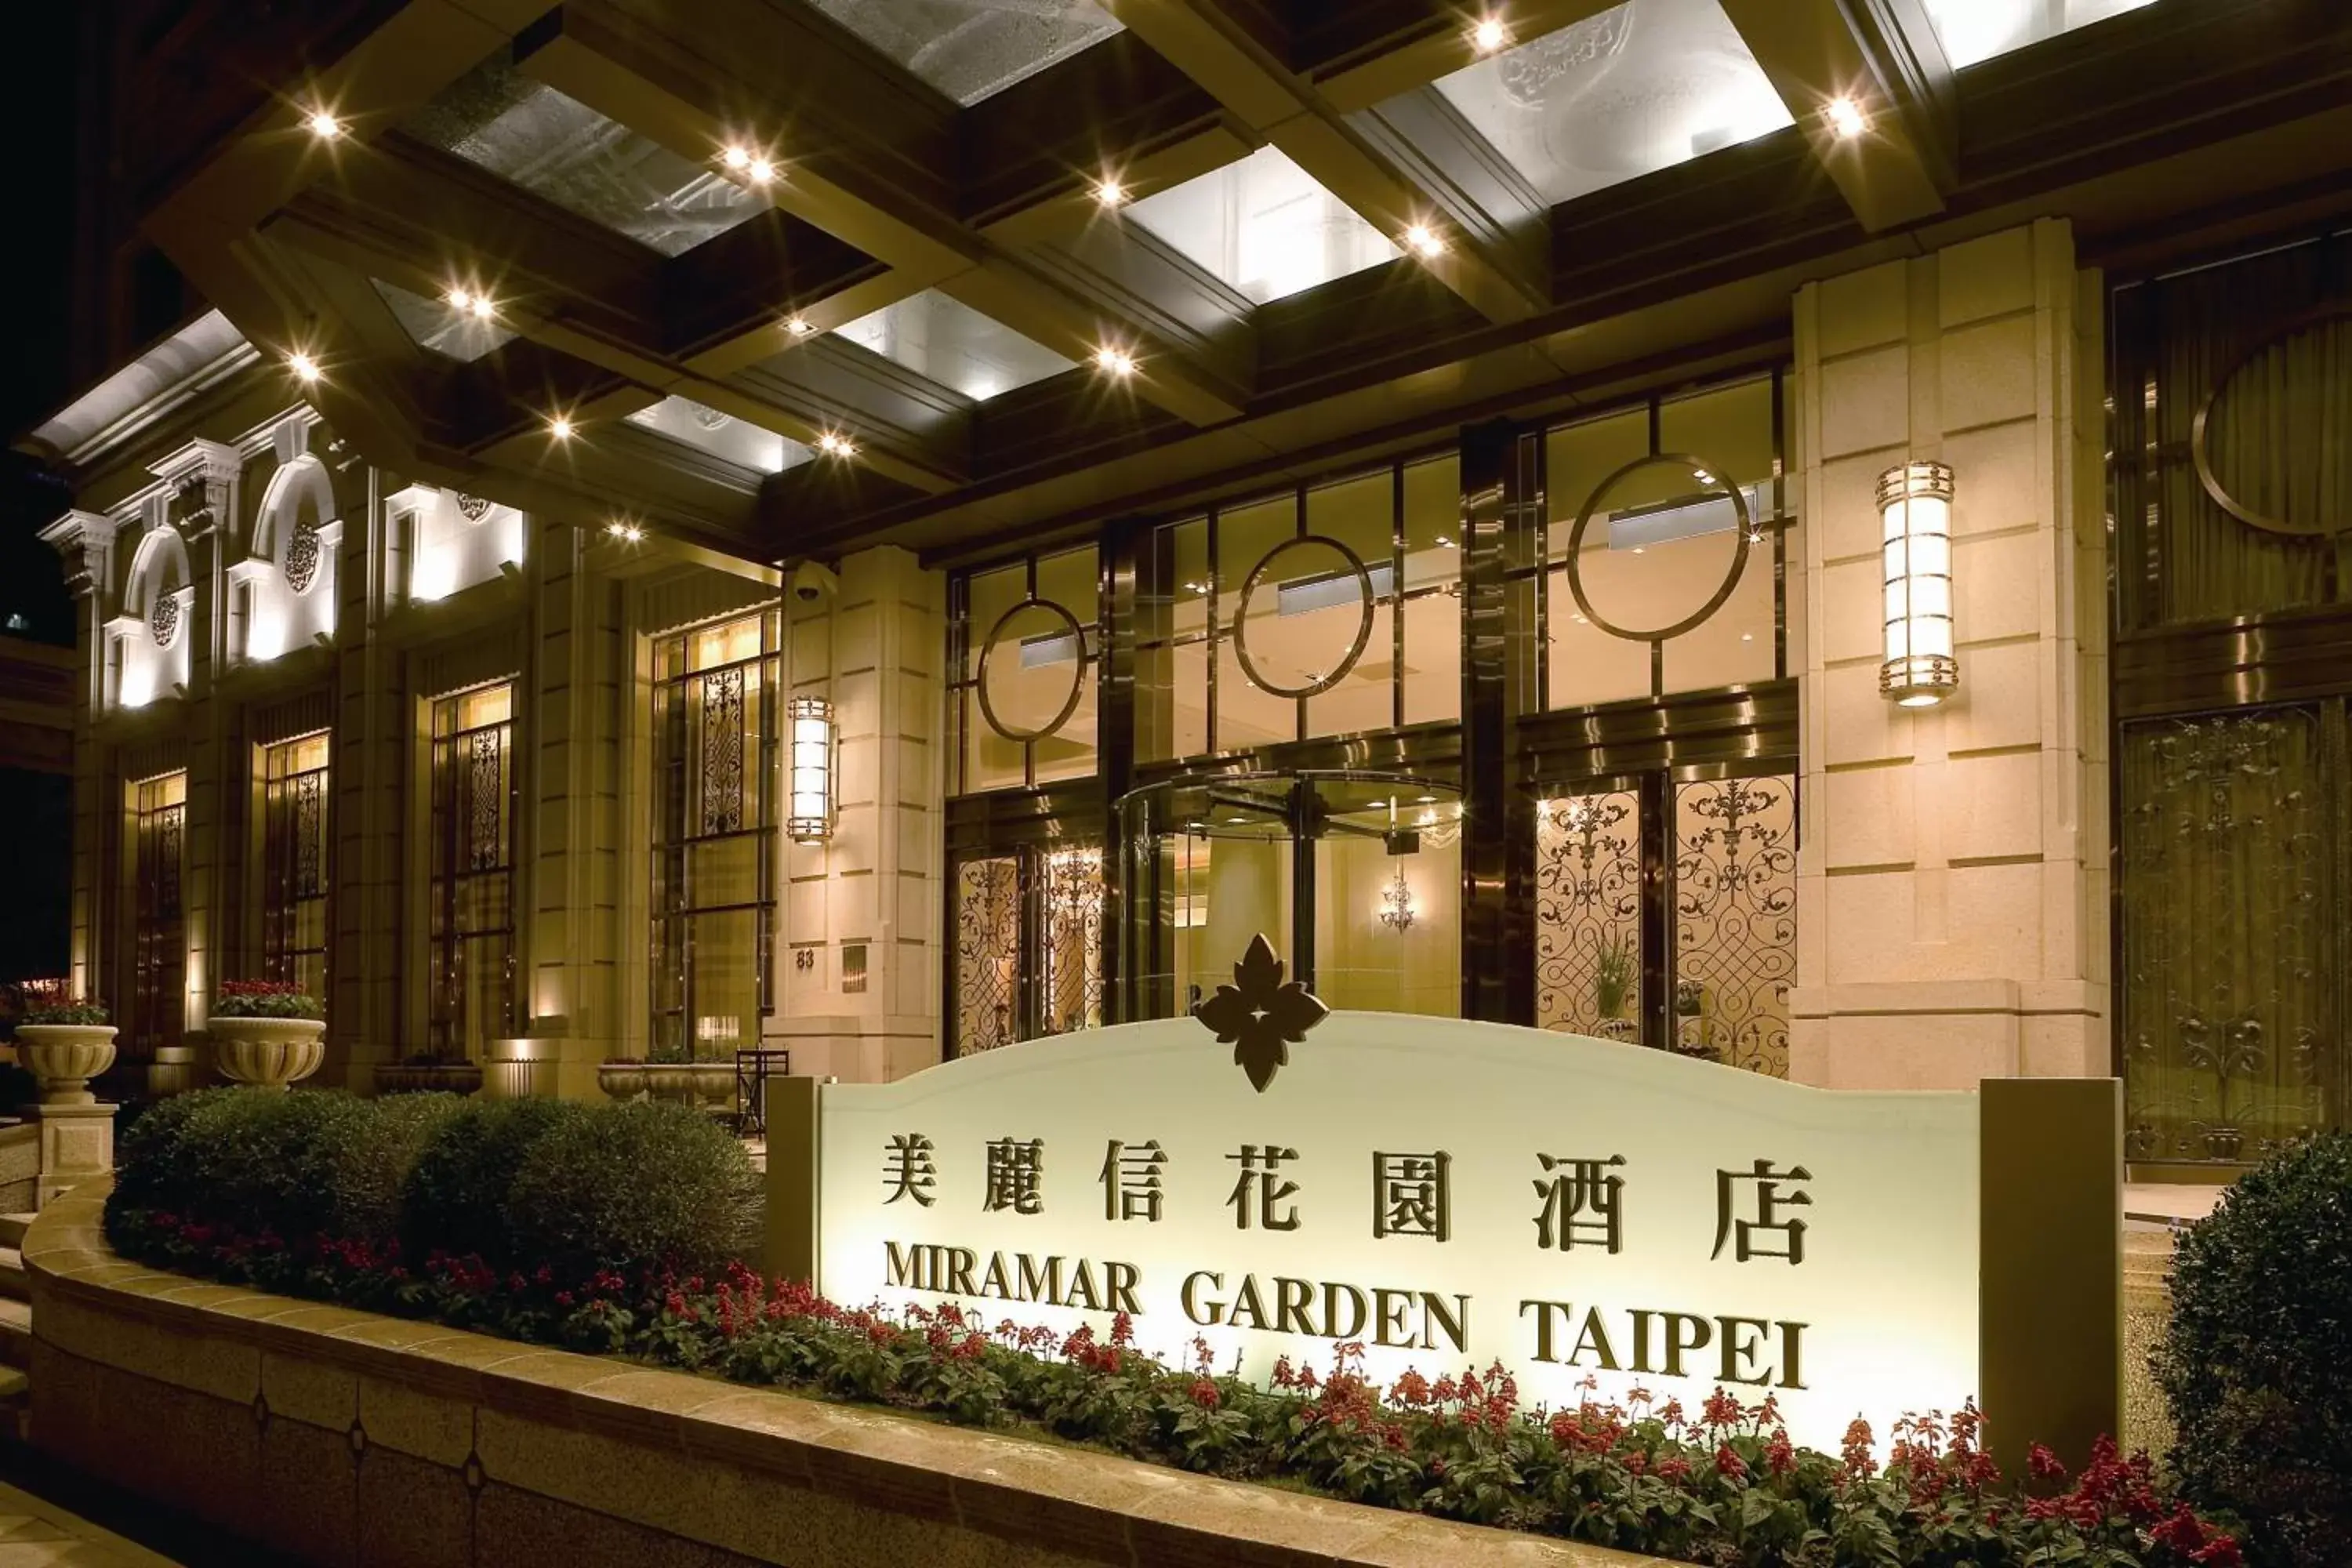 Facade/entrance in Miramar Garden Taipei